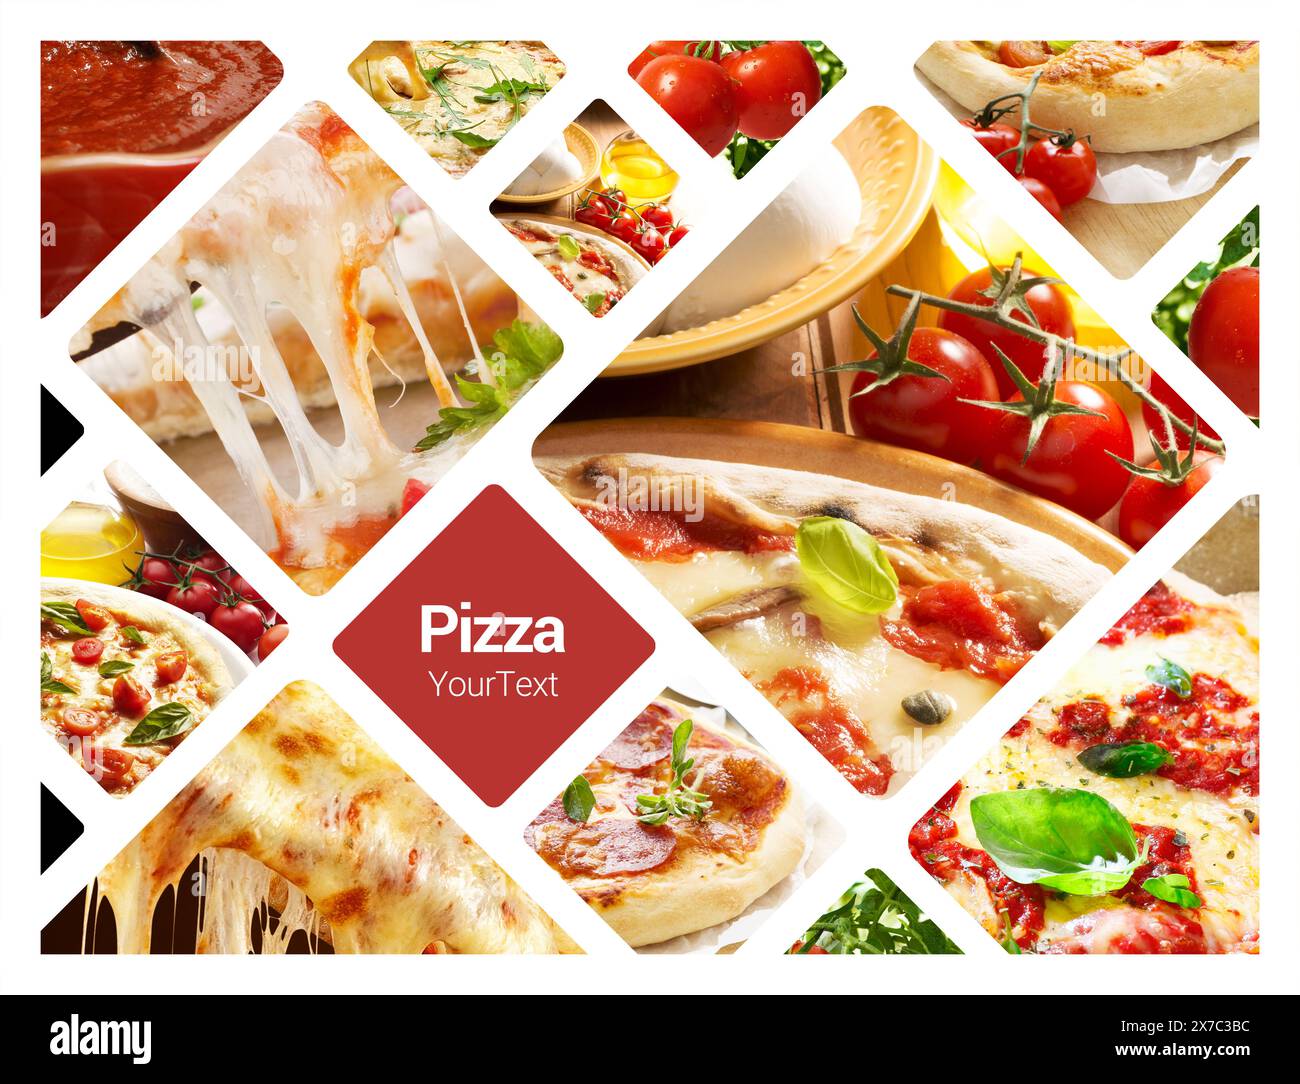 Pizzakonzept Fotocollage. Kann für Sichtständer, Displays, Broschüren, Flyer verwendet werden Stockfoto